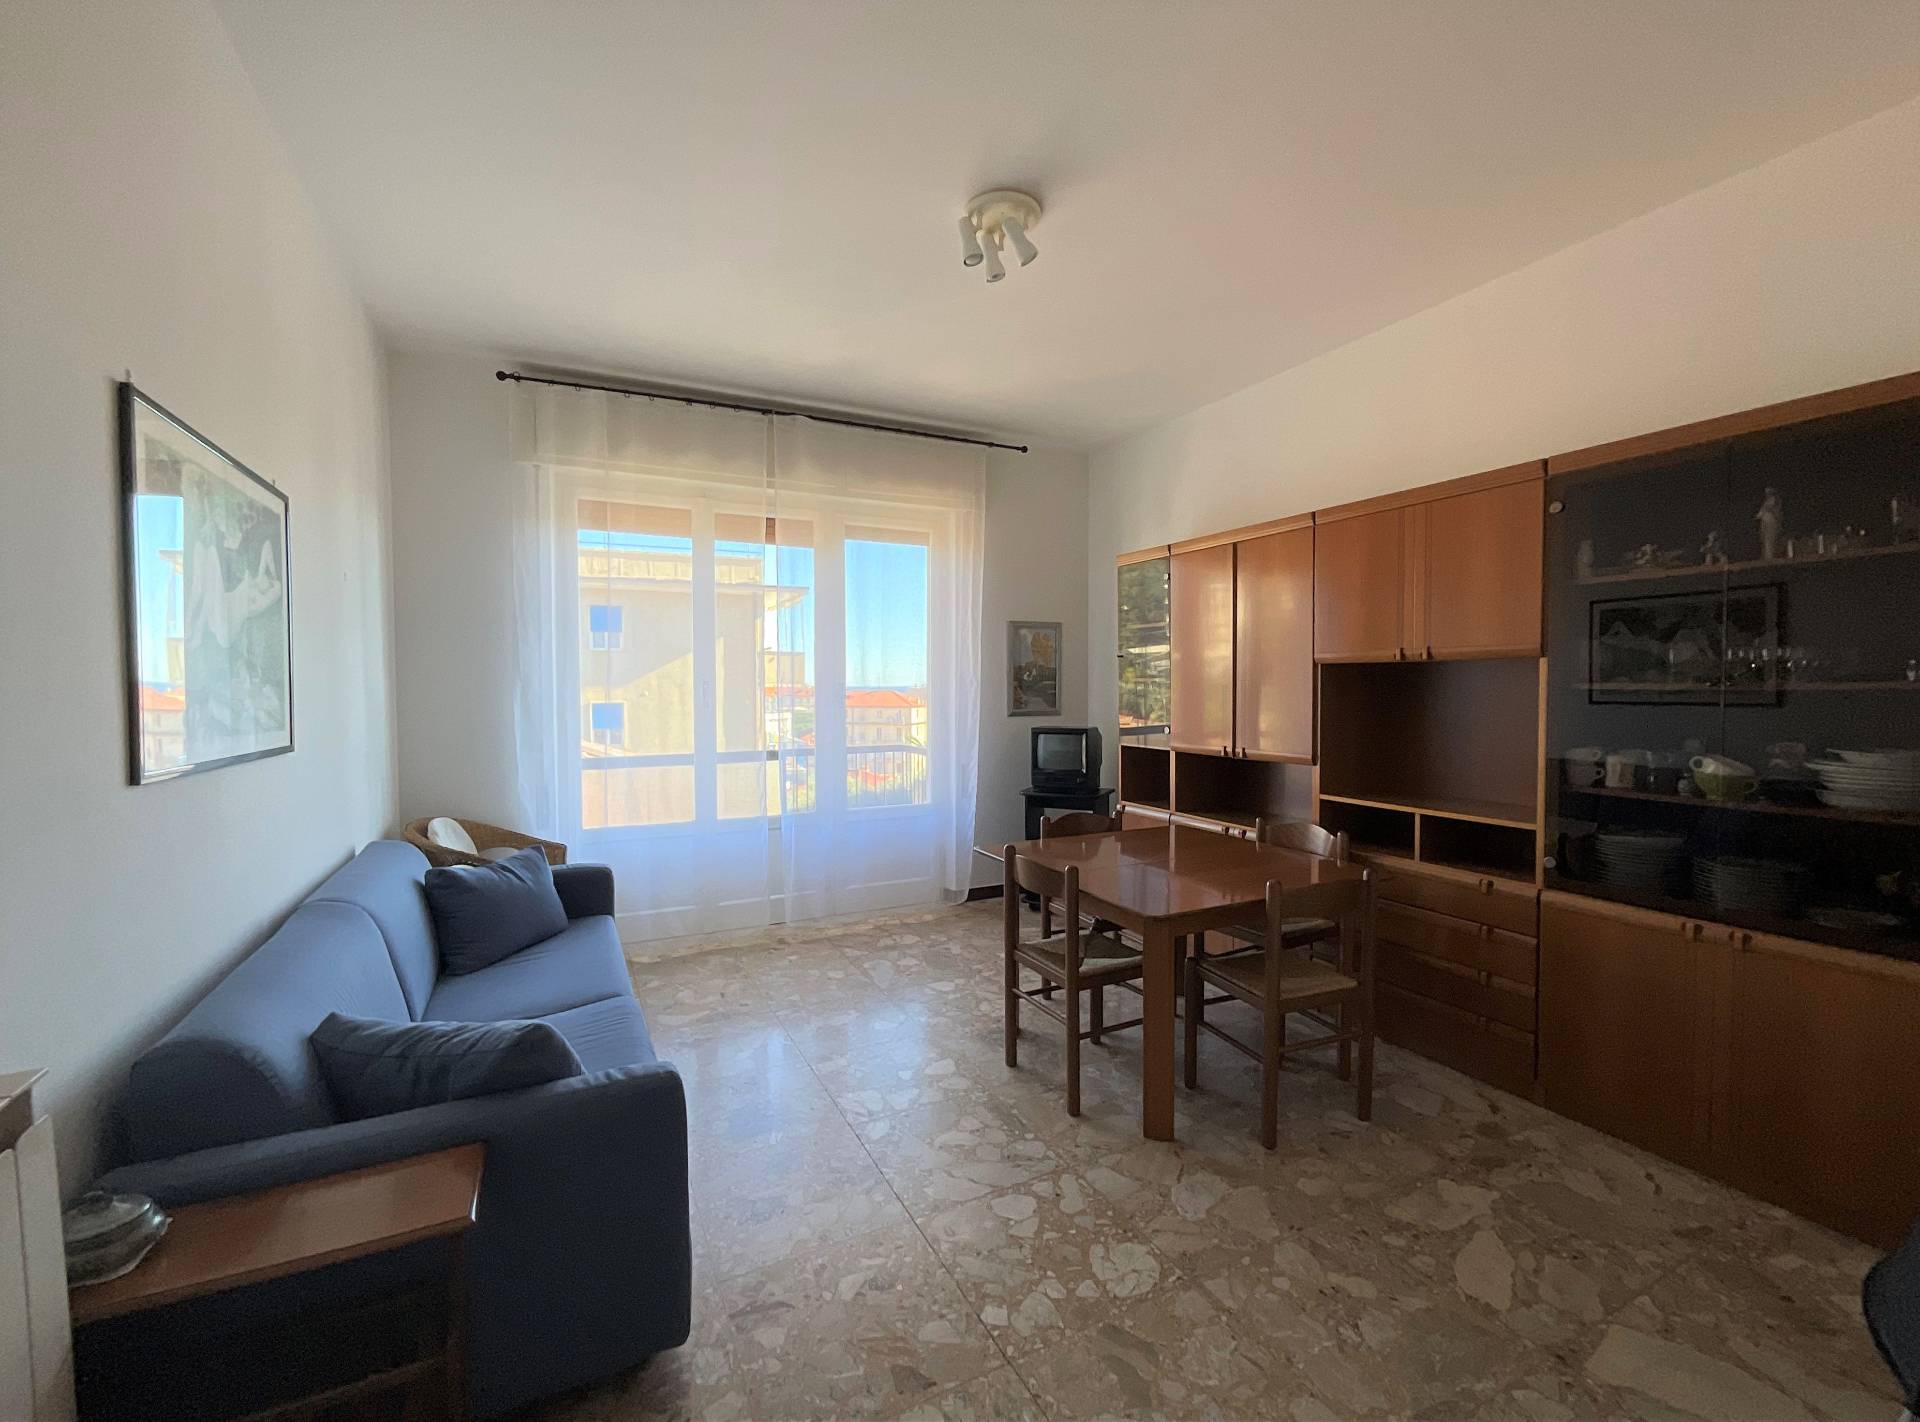 Appartamento in vendita a Spotorno, 3 locali, prezzo € 320.000 | PortaleAgenzieImmobiliari.it